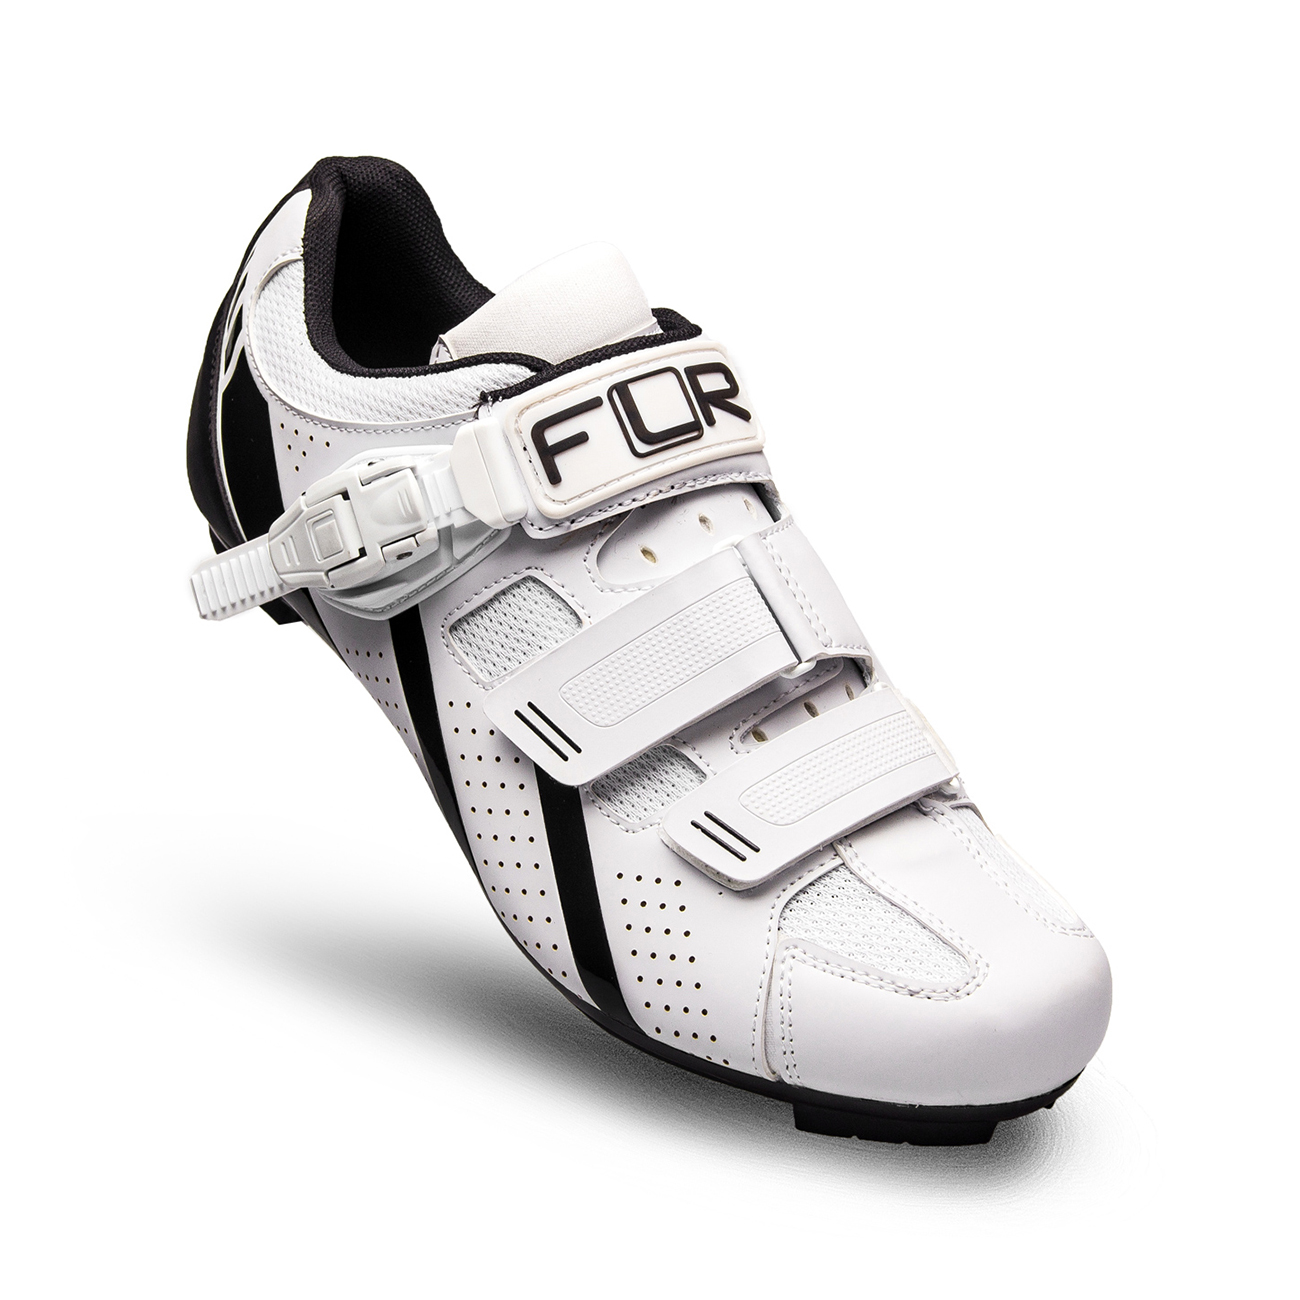 
                FLR Cyklistické tretry - F15 - černá/bílá
            